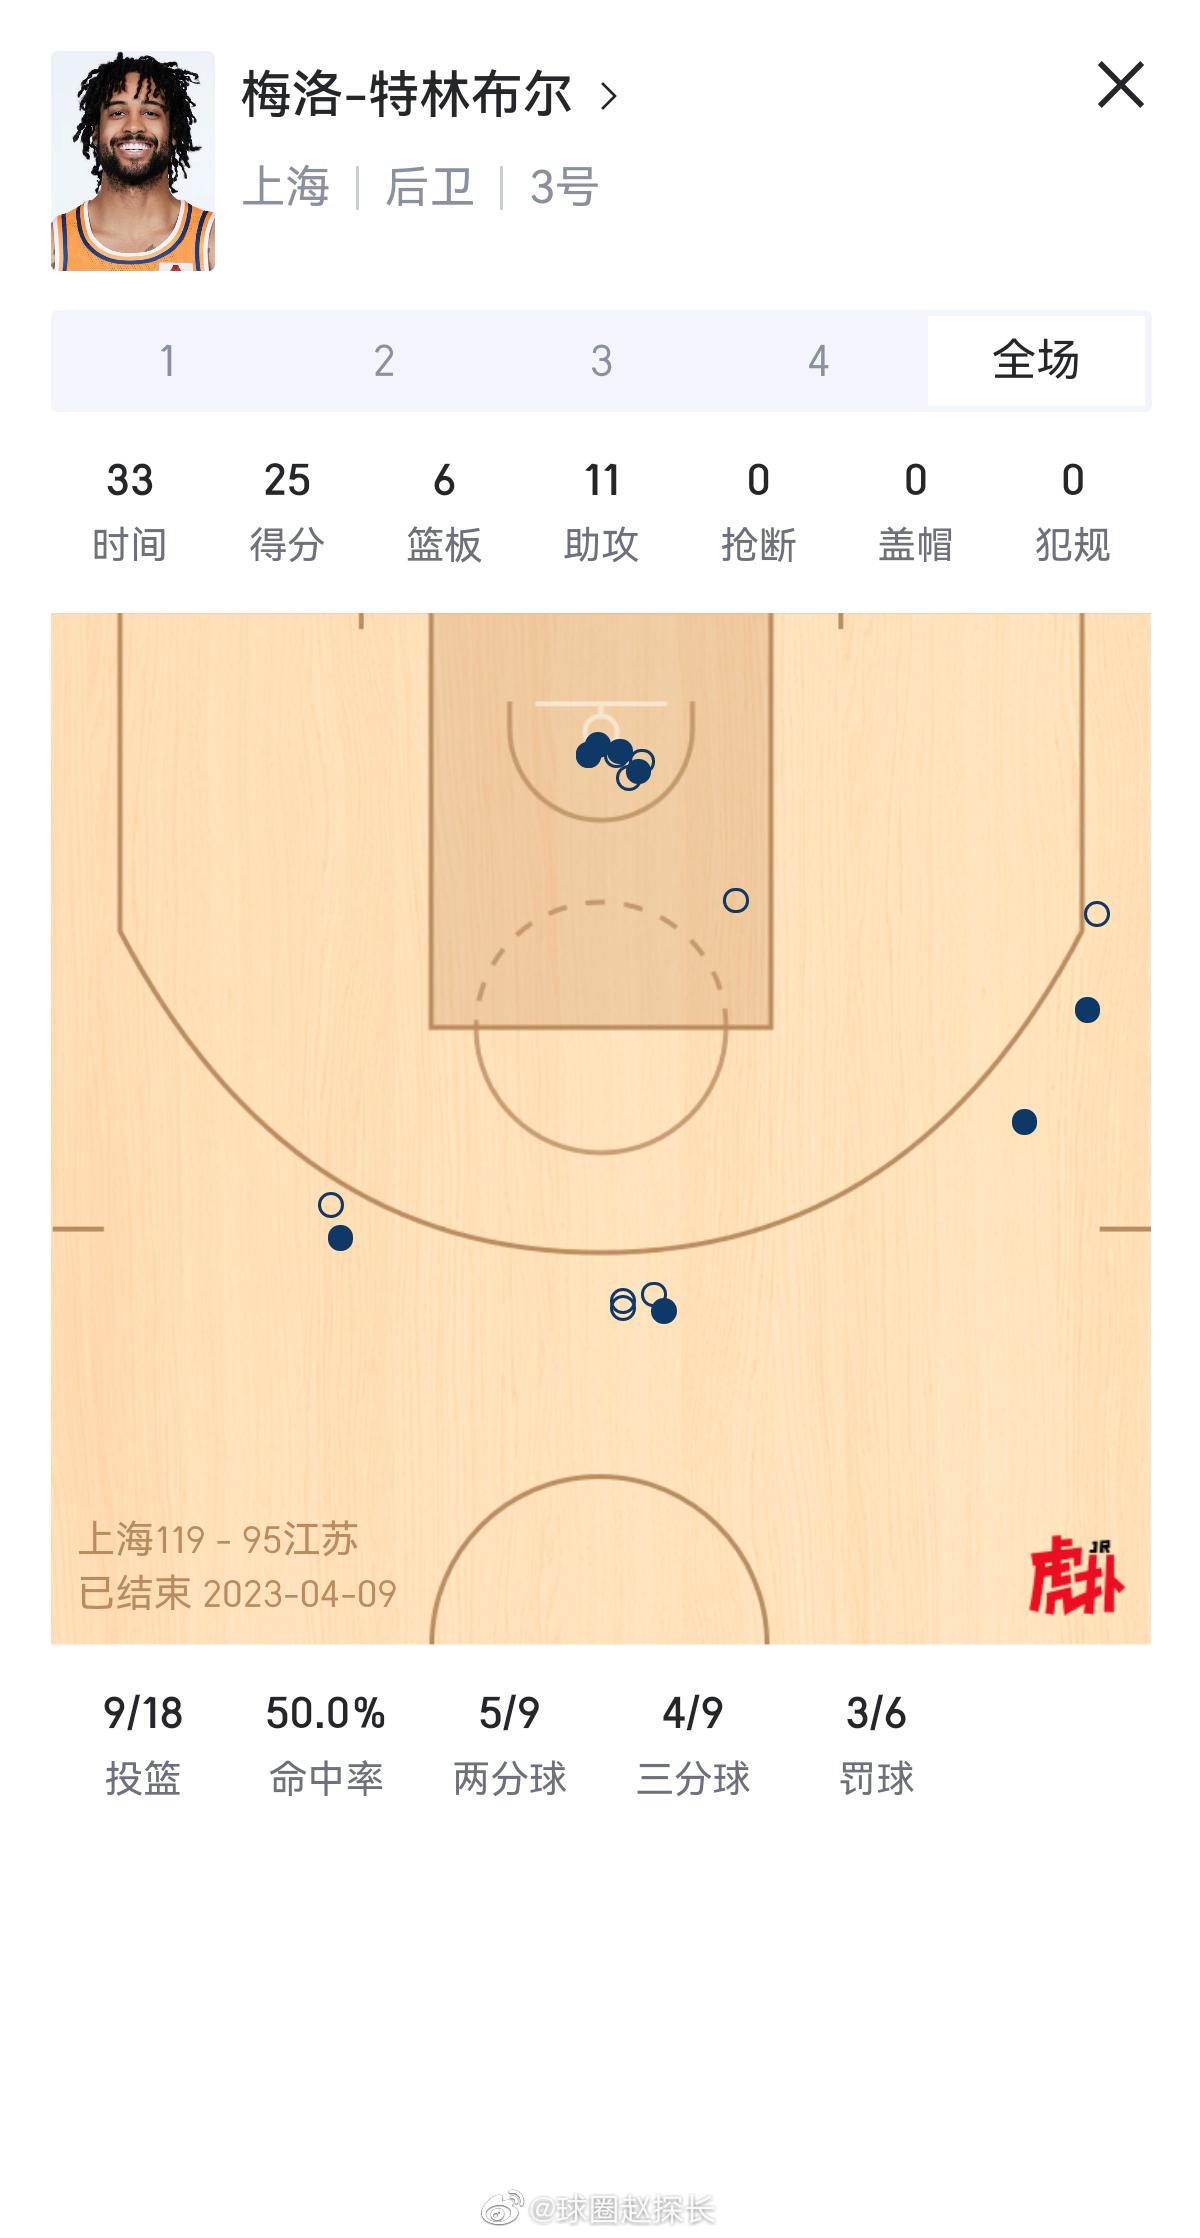 上海119-95大胜江苏，场面上可以说是全面压制的。大王33分12篮板在内线翻江(3)